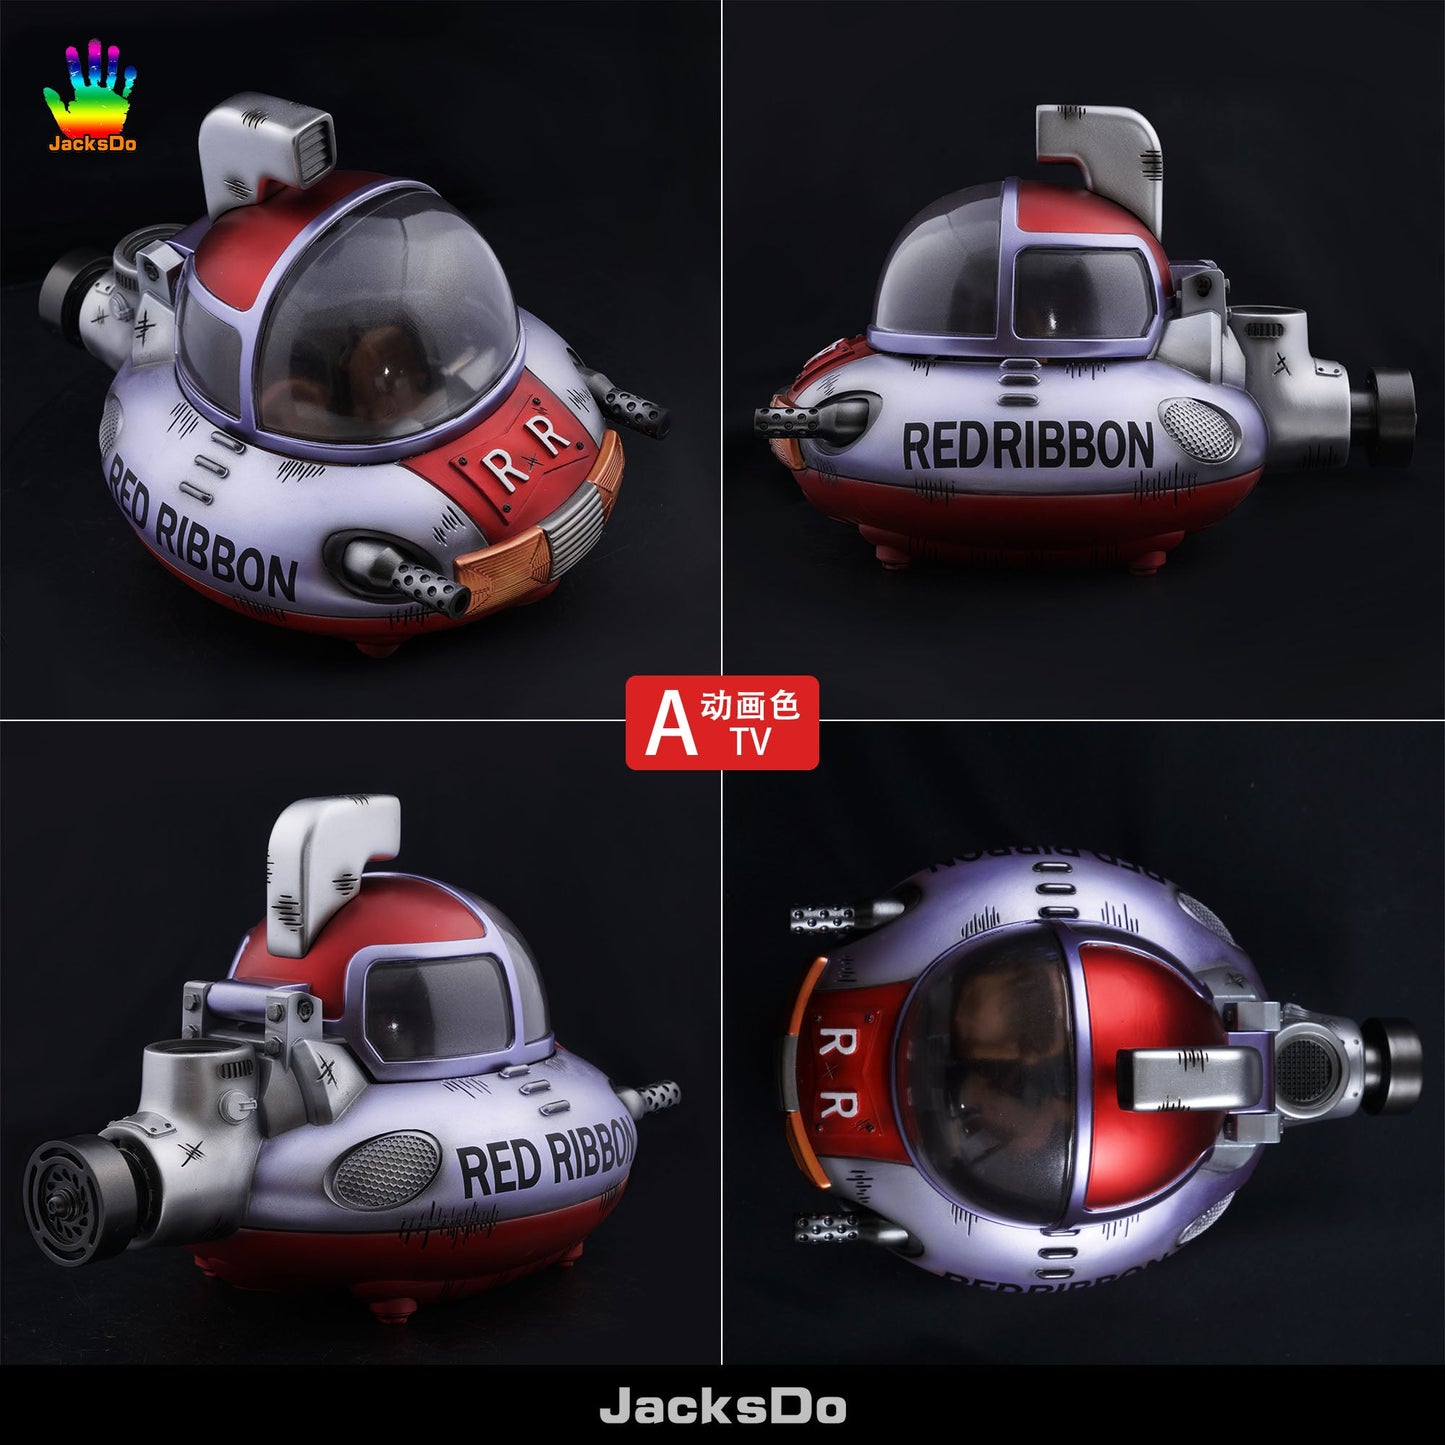 JacksDo - Red Ribbon Submarine StatueCorp